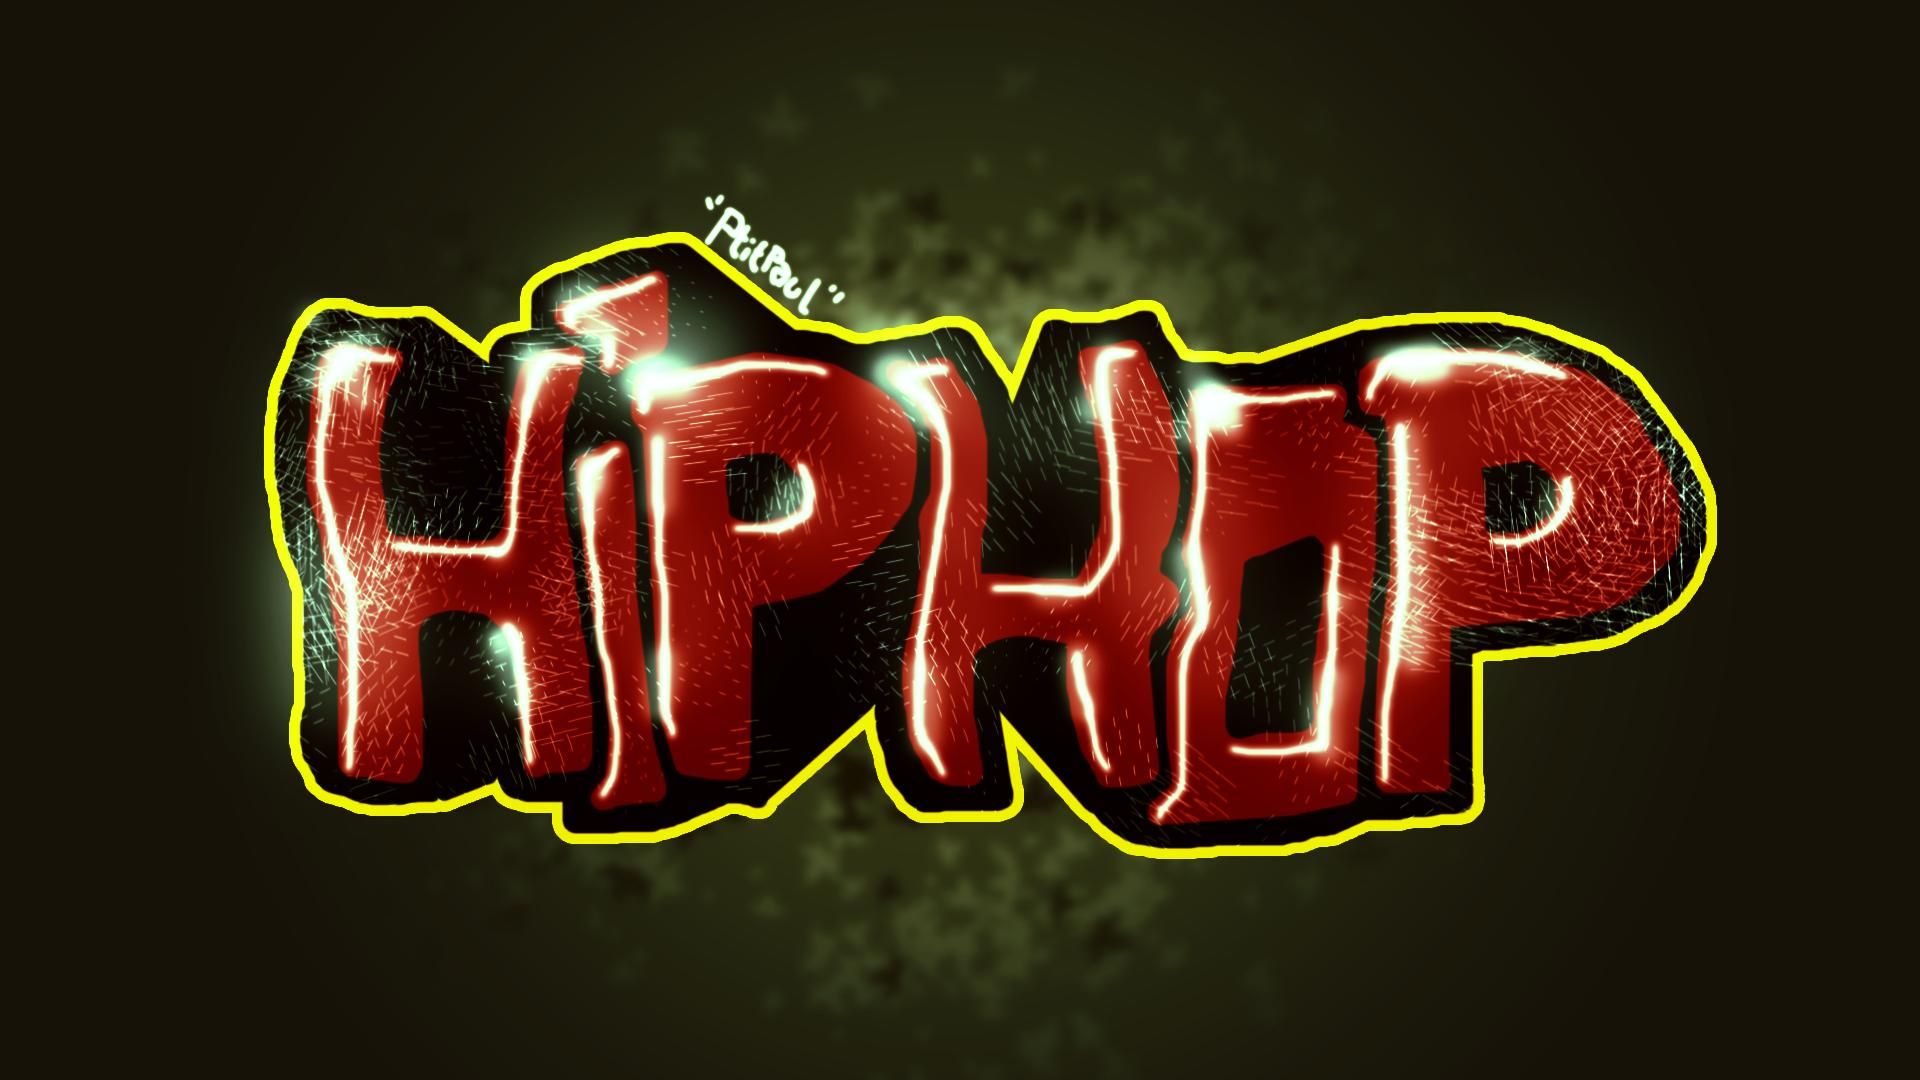 Hip hop graffiti wallpapers hip hop wallpaper hiphop graffiti graffiti